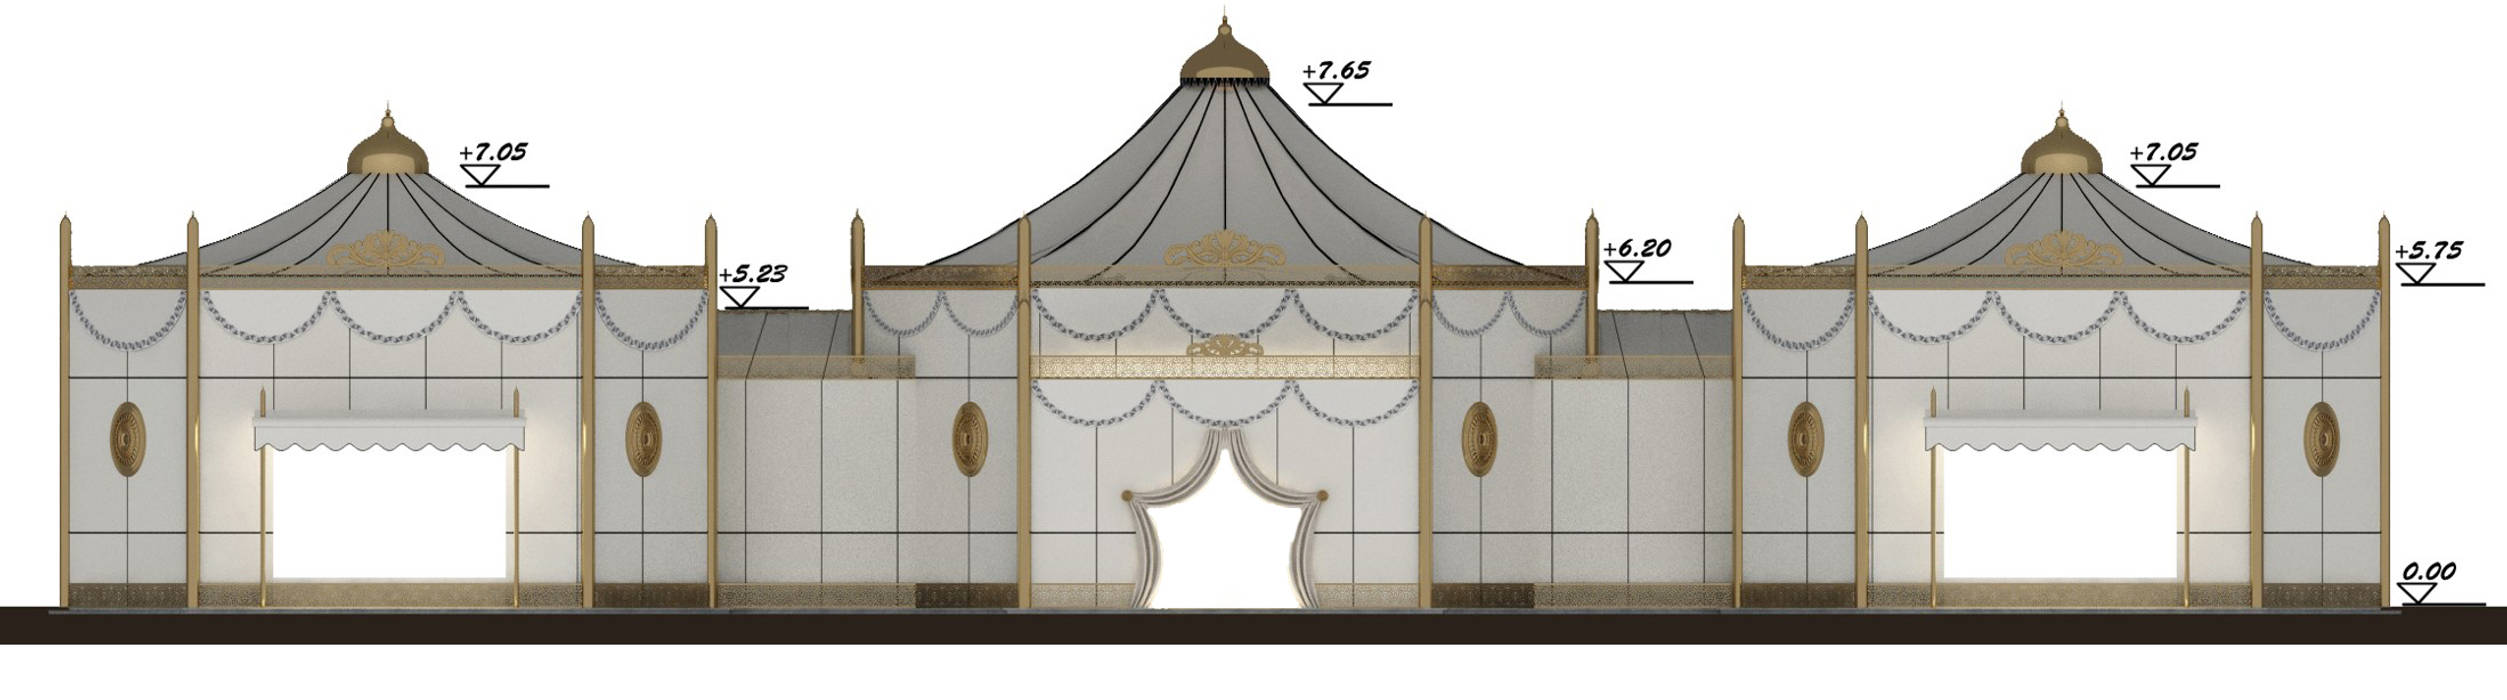 Cephe - 1 / Ramadan Majlis Sia Moore Archıtecture Interıor Desıgn Müstakil ev Metal ödüllü mimar,geleneksel tasarım